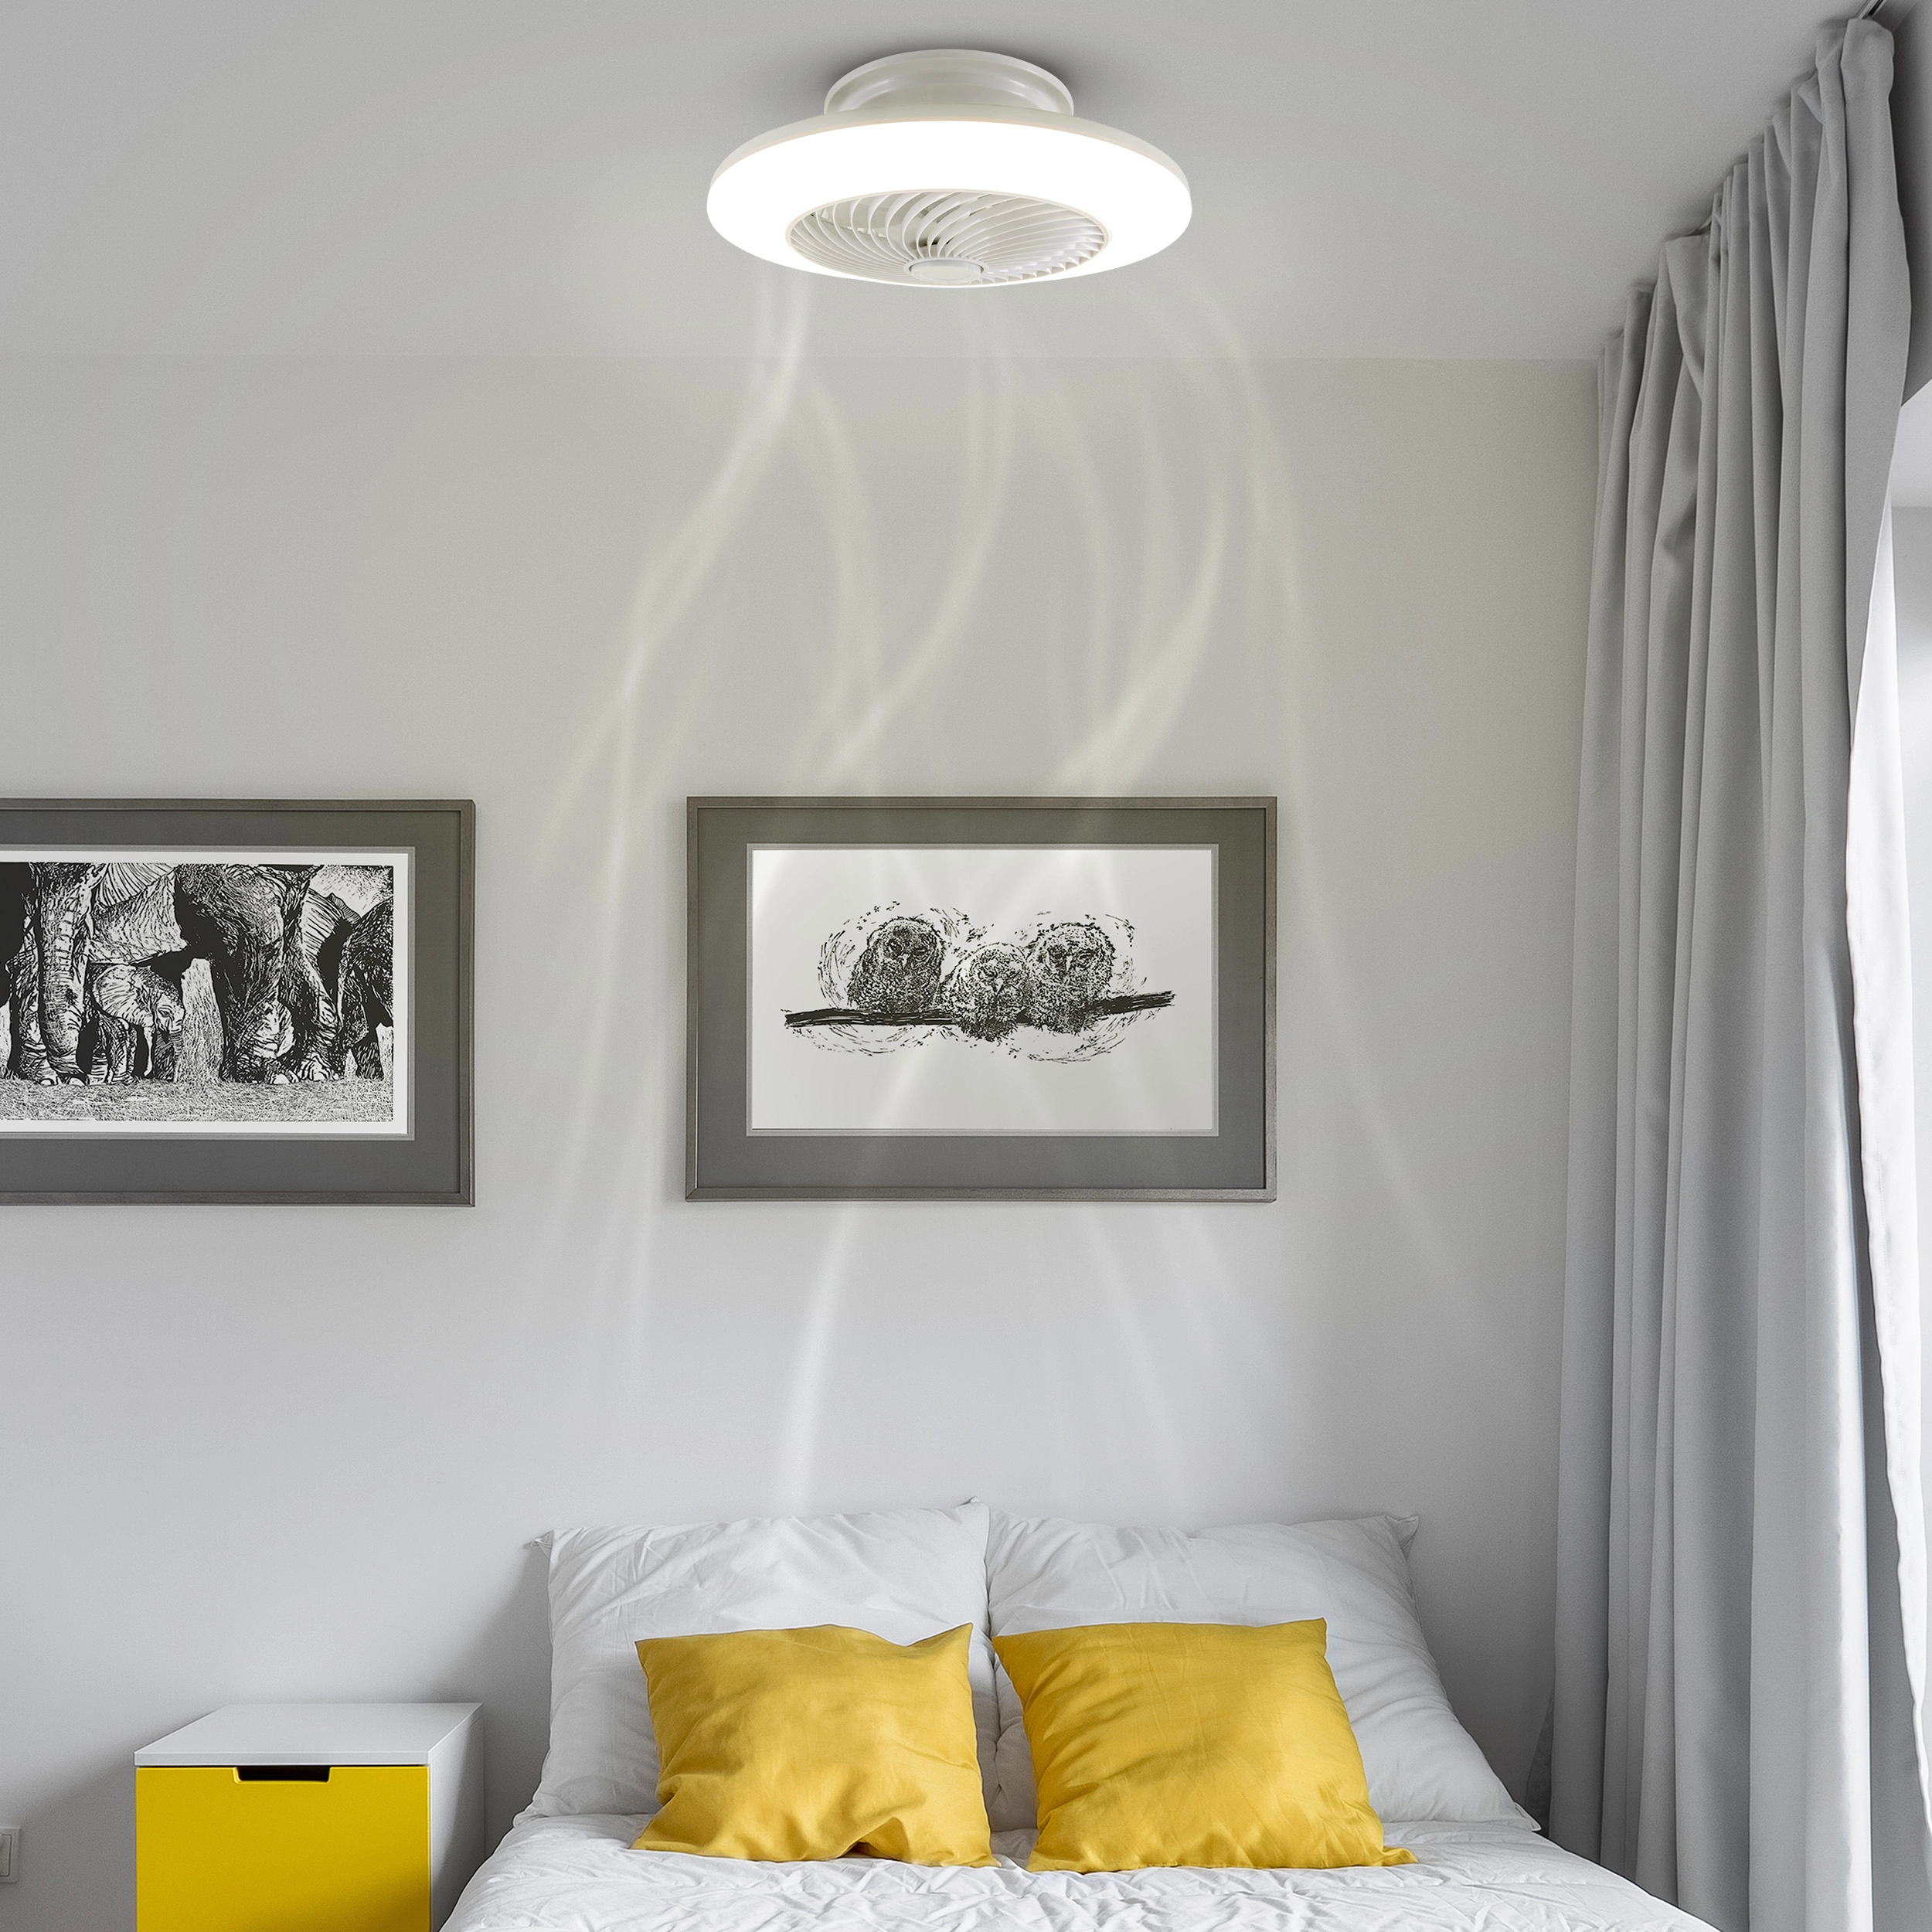 Näve LED-Deckenleuchte mit Ventilator Adoranto bei OBI cm 55 kaufen